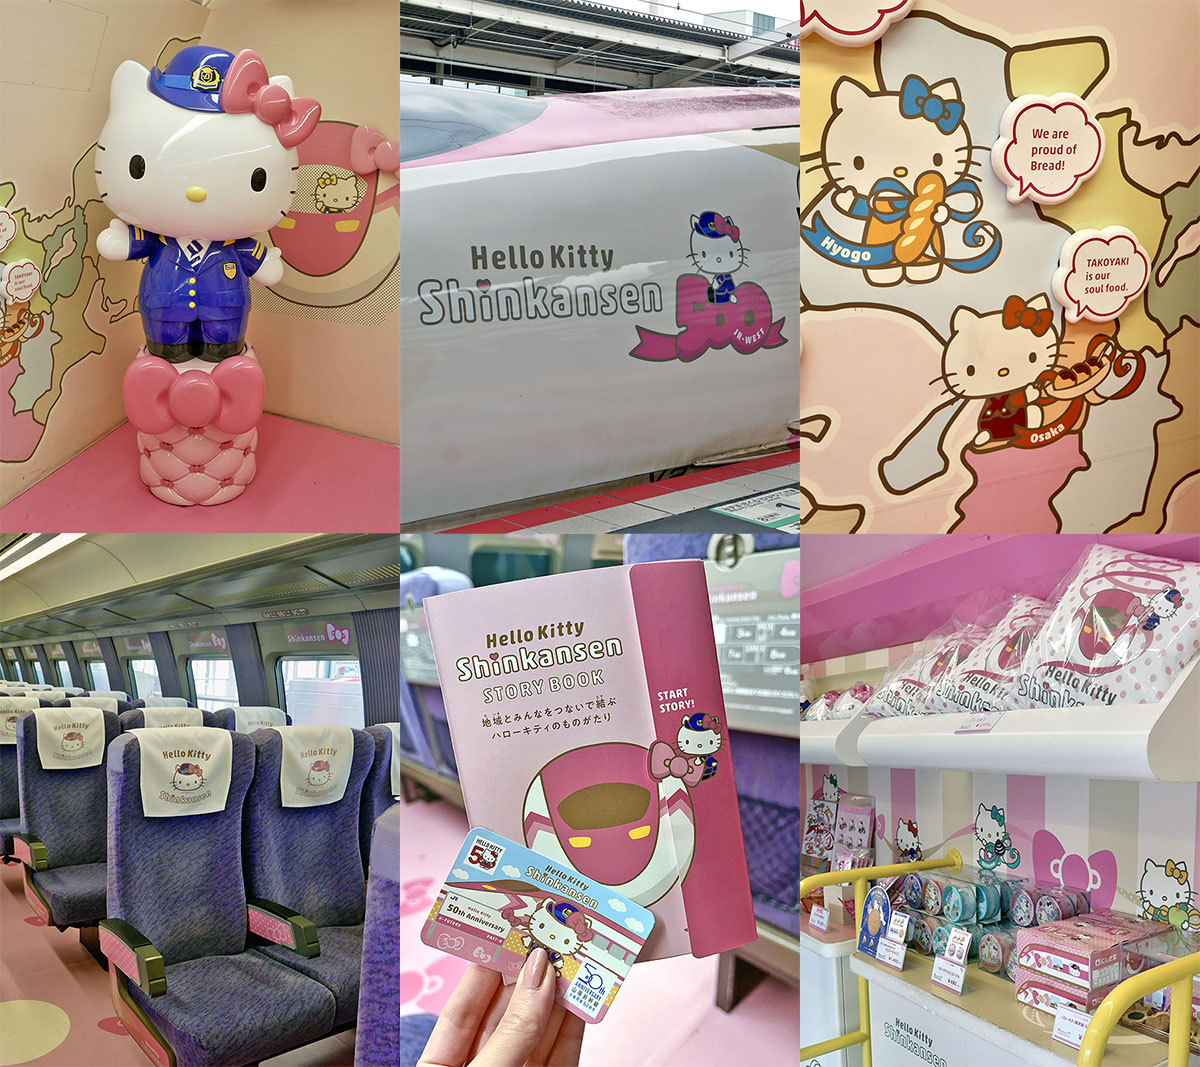 Travelling on the Hello Kitty Shinkansen